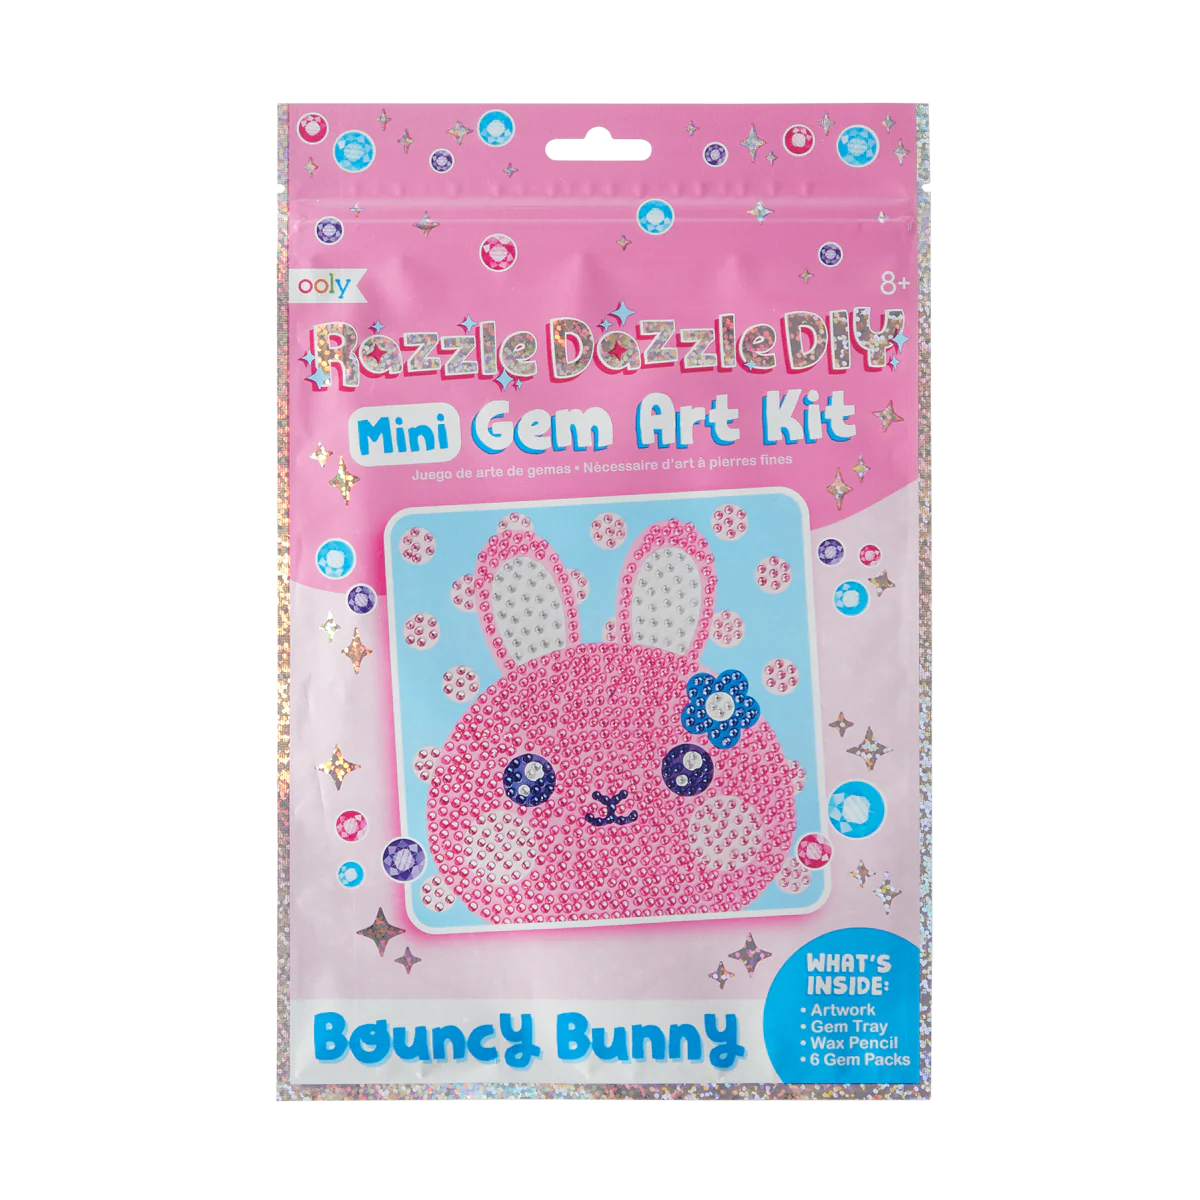 161-086-Razzle-Dazzle-DIY-Mini-Gem-Art-Kit-Bouncy-Bunny-C1.webp?0